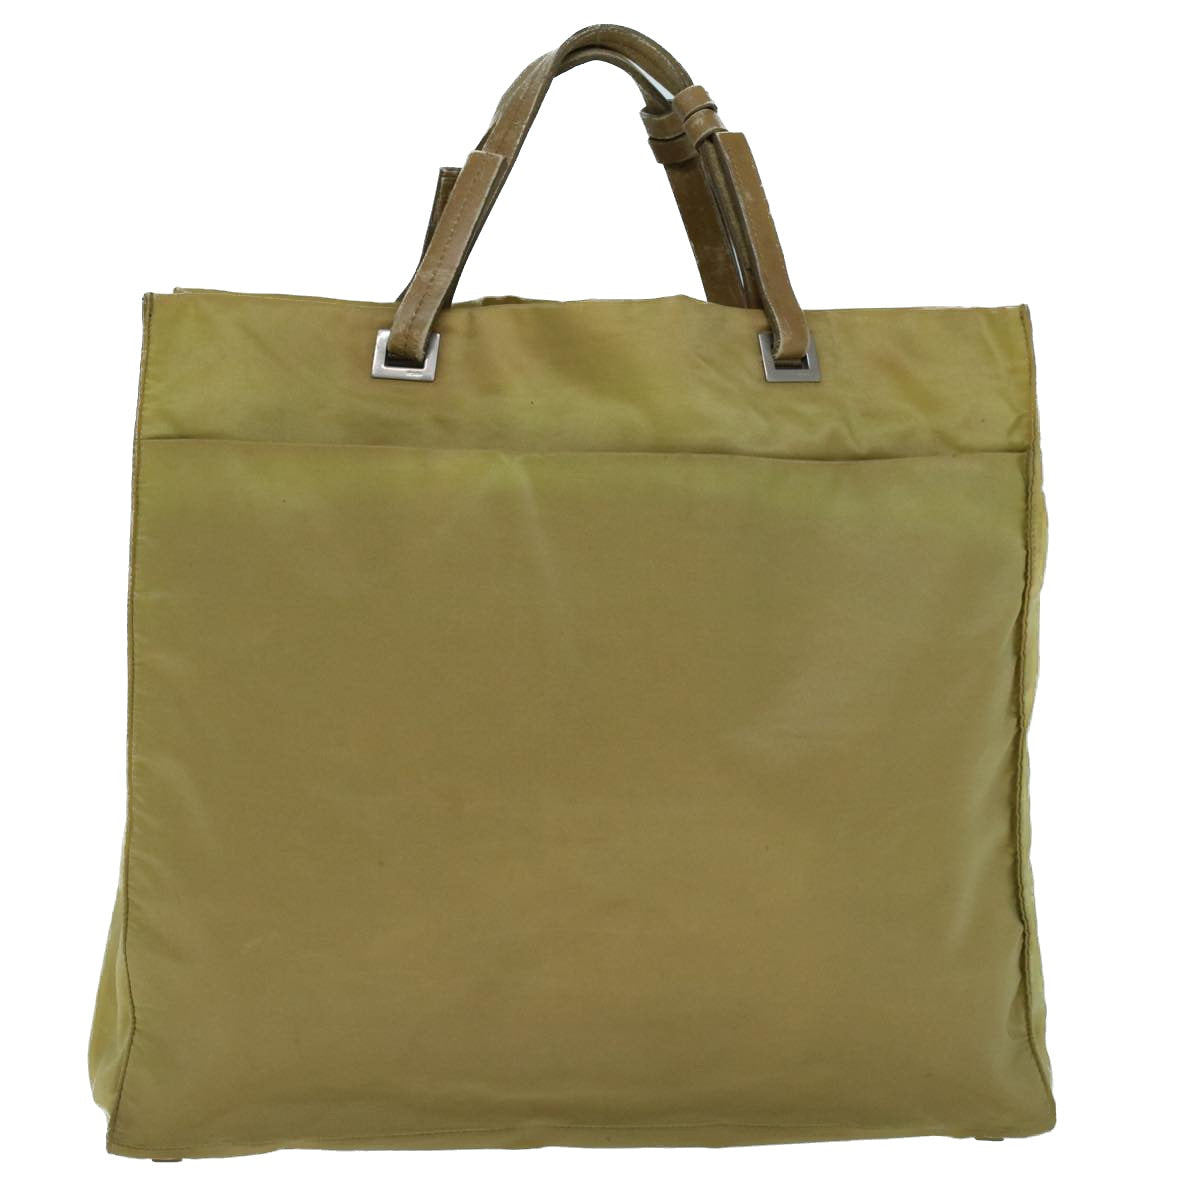 PRADA Tote Bag Nylon Leather Khaki Auth bs8917 - 0